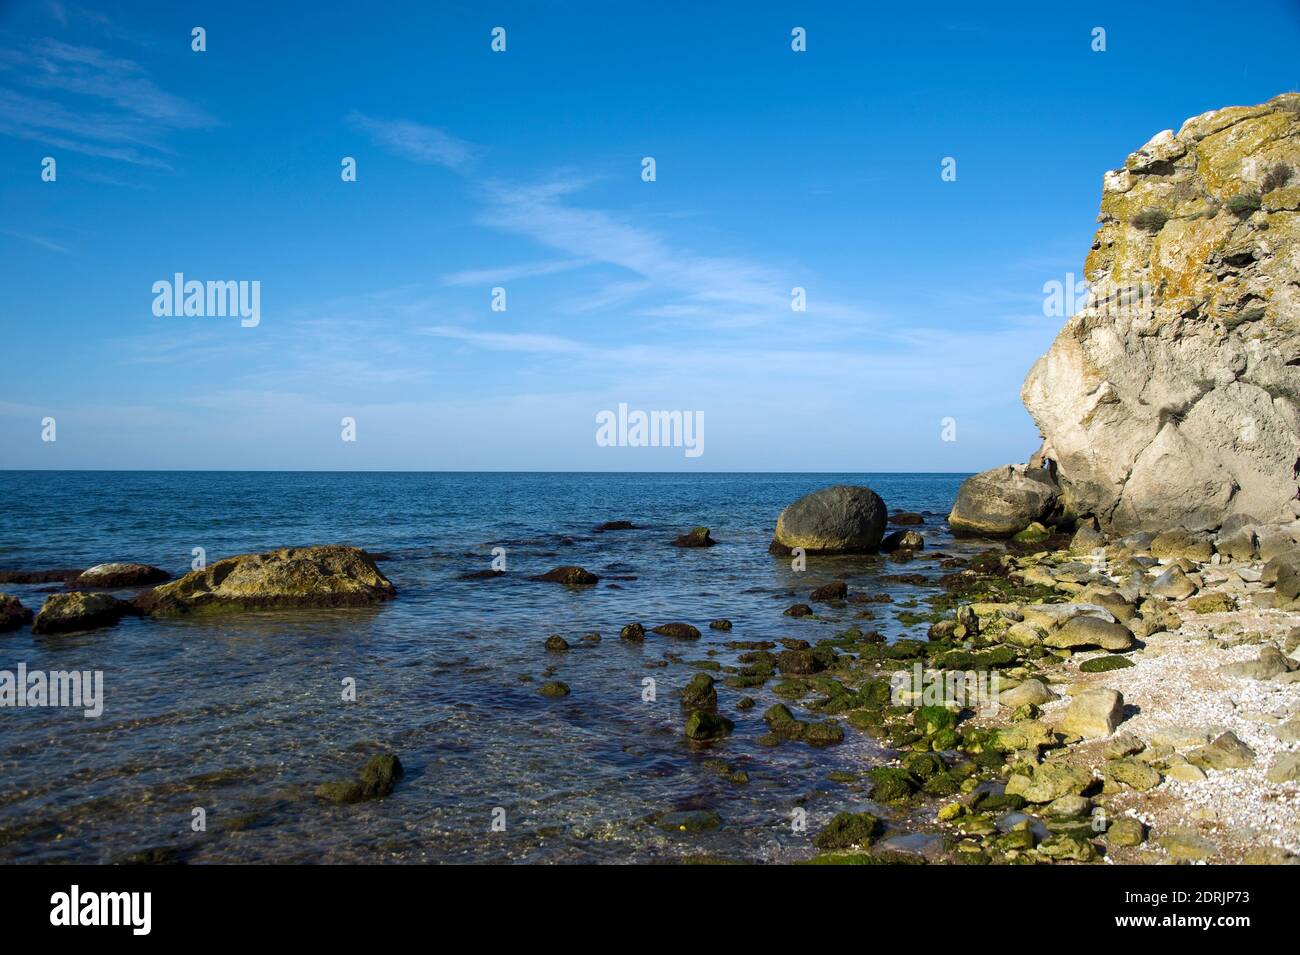 Une baie pittoresque entourée de rochers sur la mer d'Azov. Banque D'Images